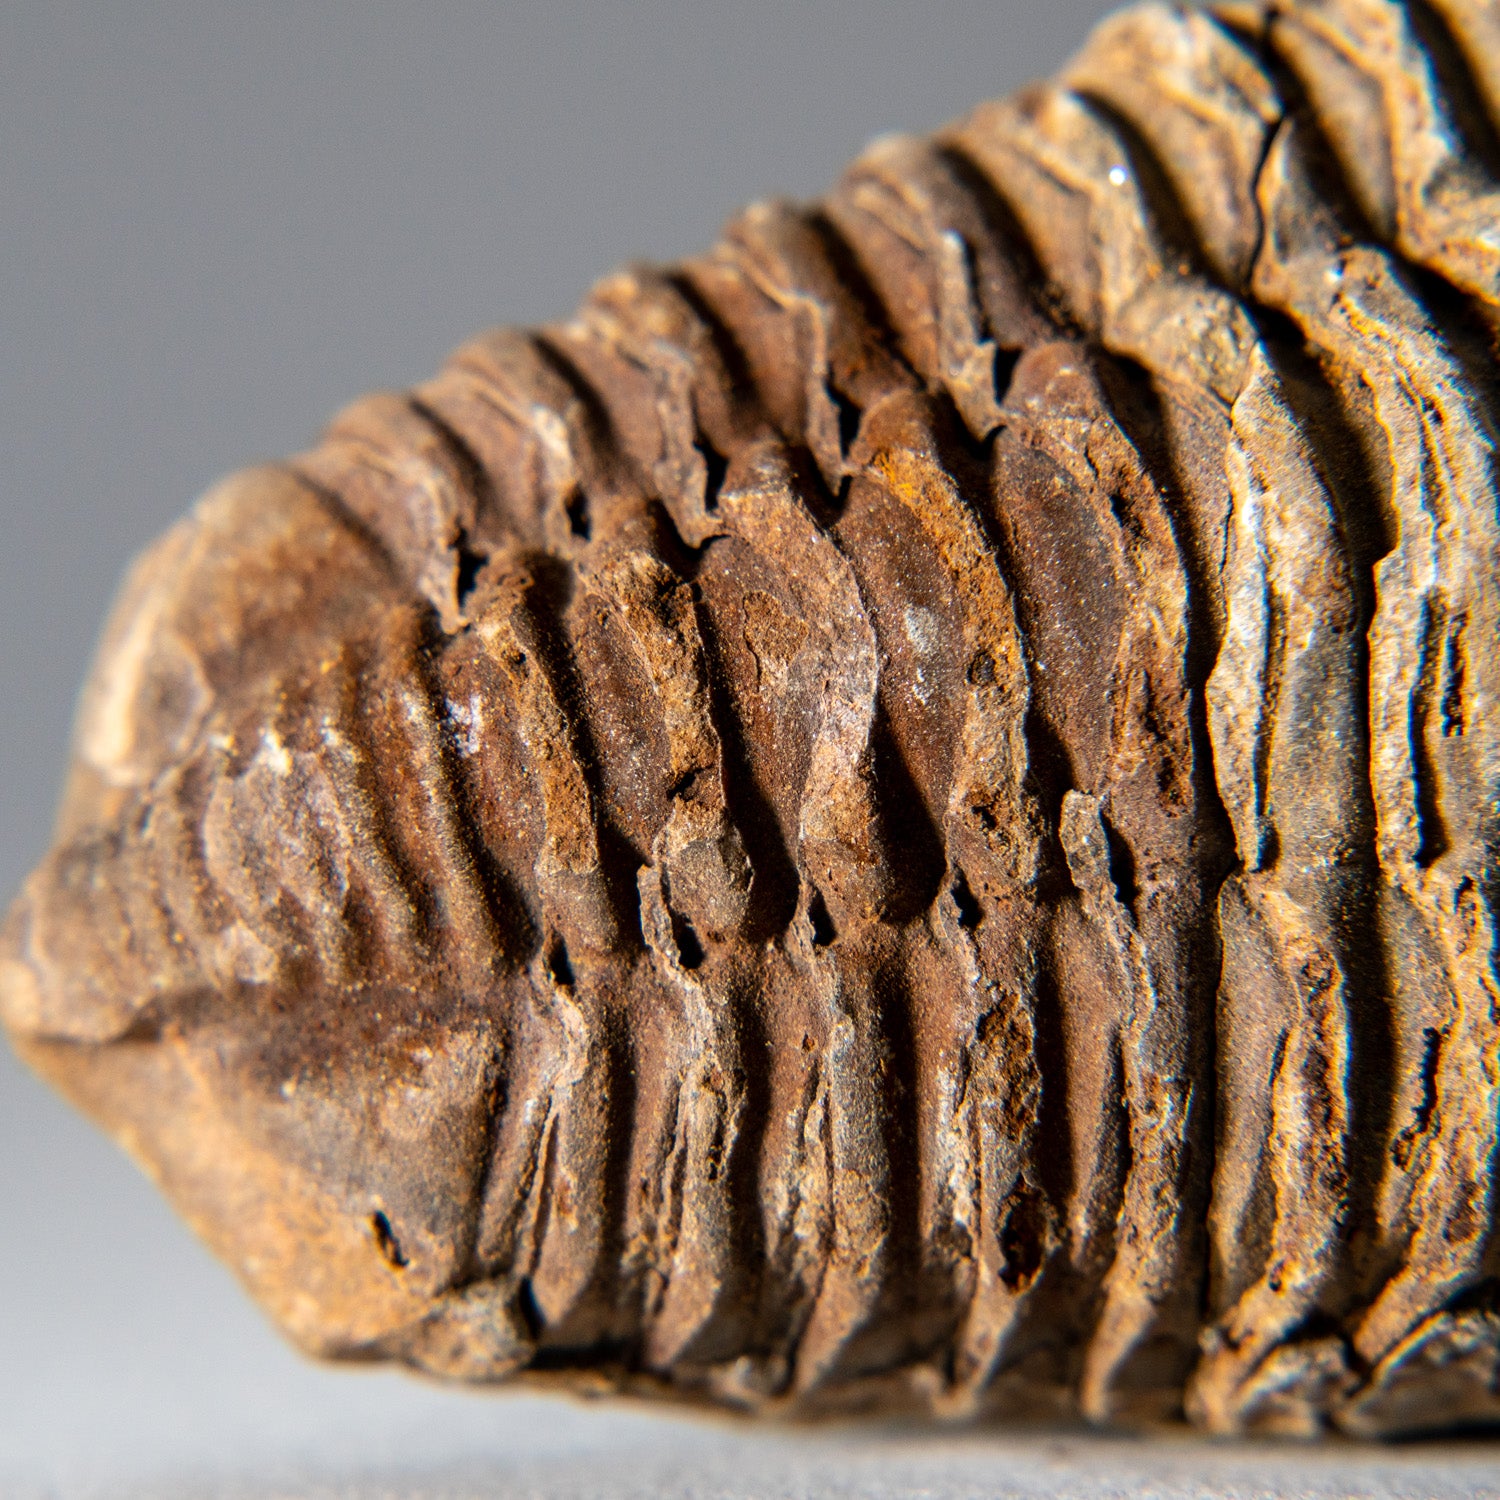 Genuine Single Flexicalymene Trilobite Fossil